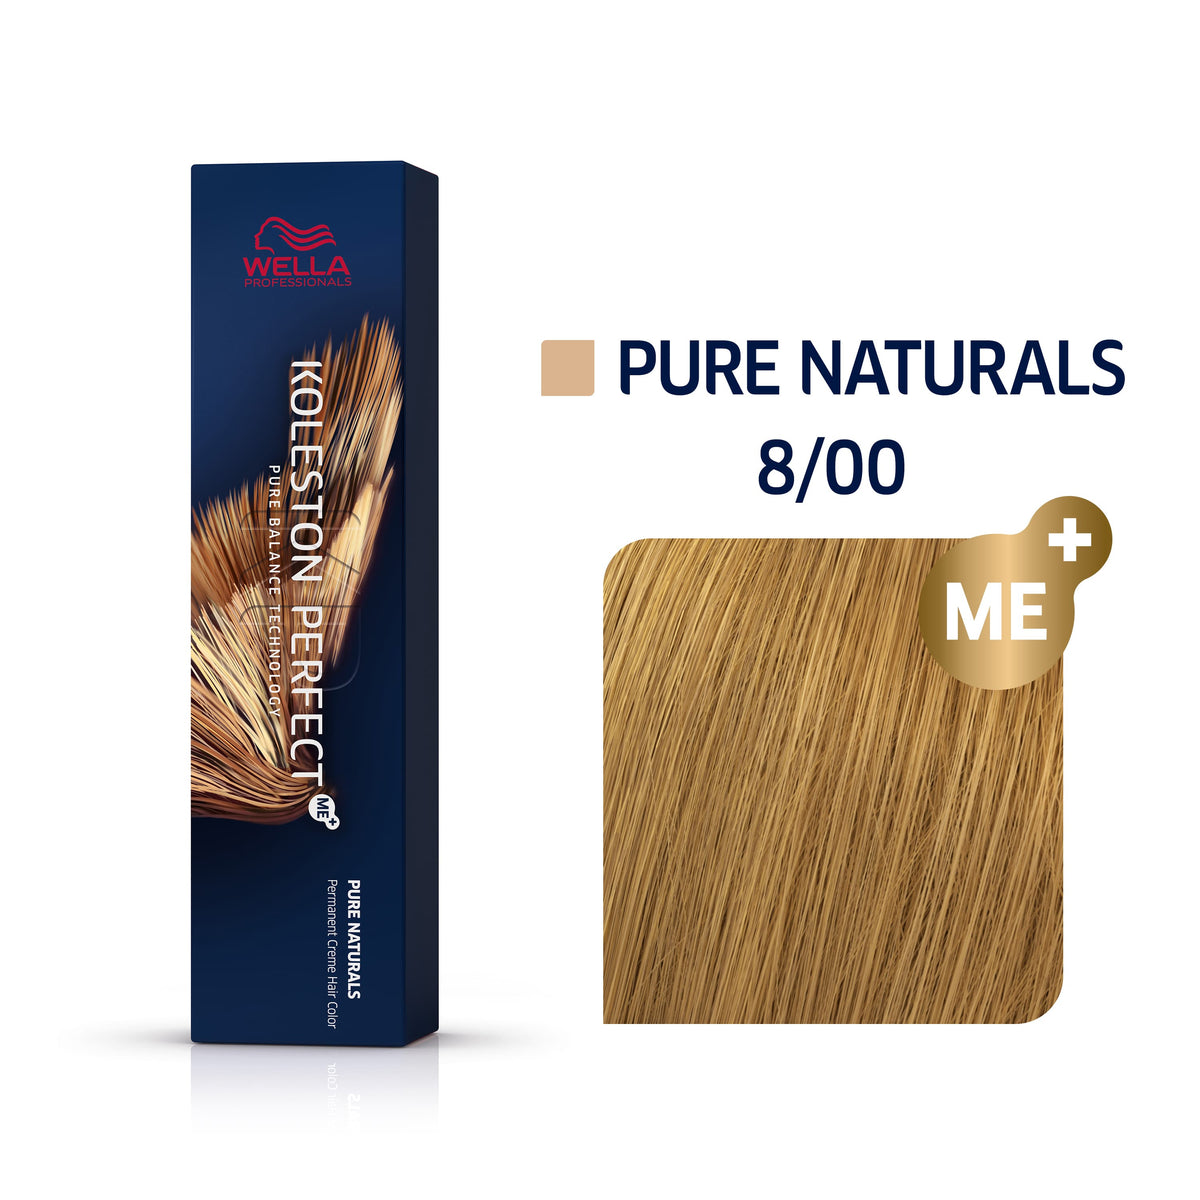 a box of wella colour pure naturals 8/00  blonde hair dye